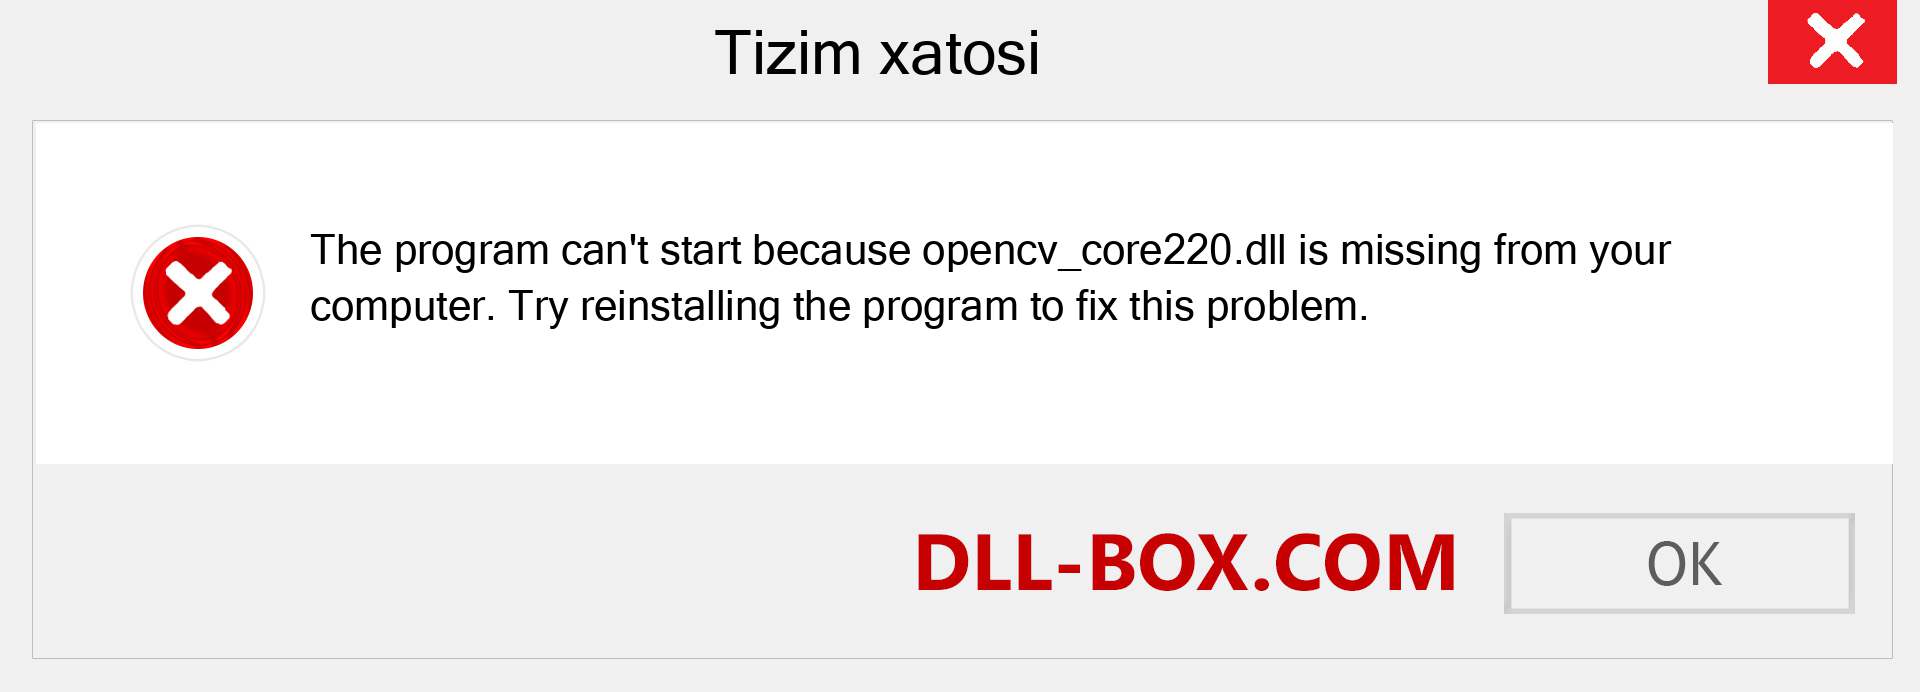 opencv_core220.dll fayli yo'qolganmi?. Windows 7, 8, 10 uchun yuklab olish - Windowsda opencv_core220 dll etishmayotgan xatoni tuzating, rasmlar, rasmlar